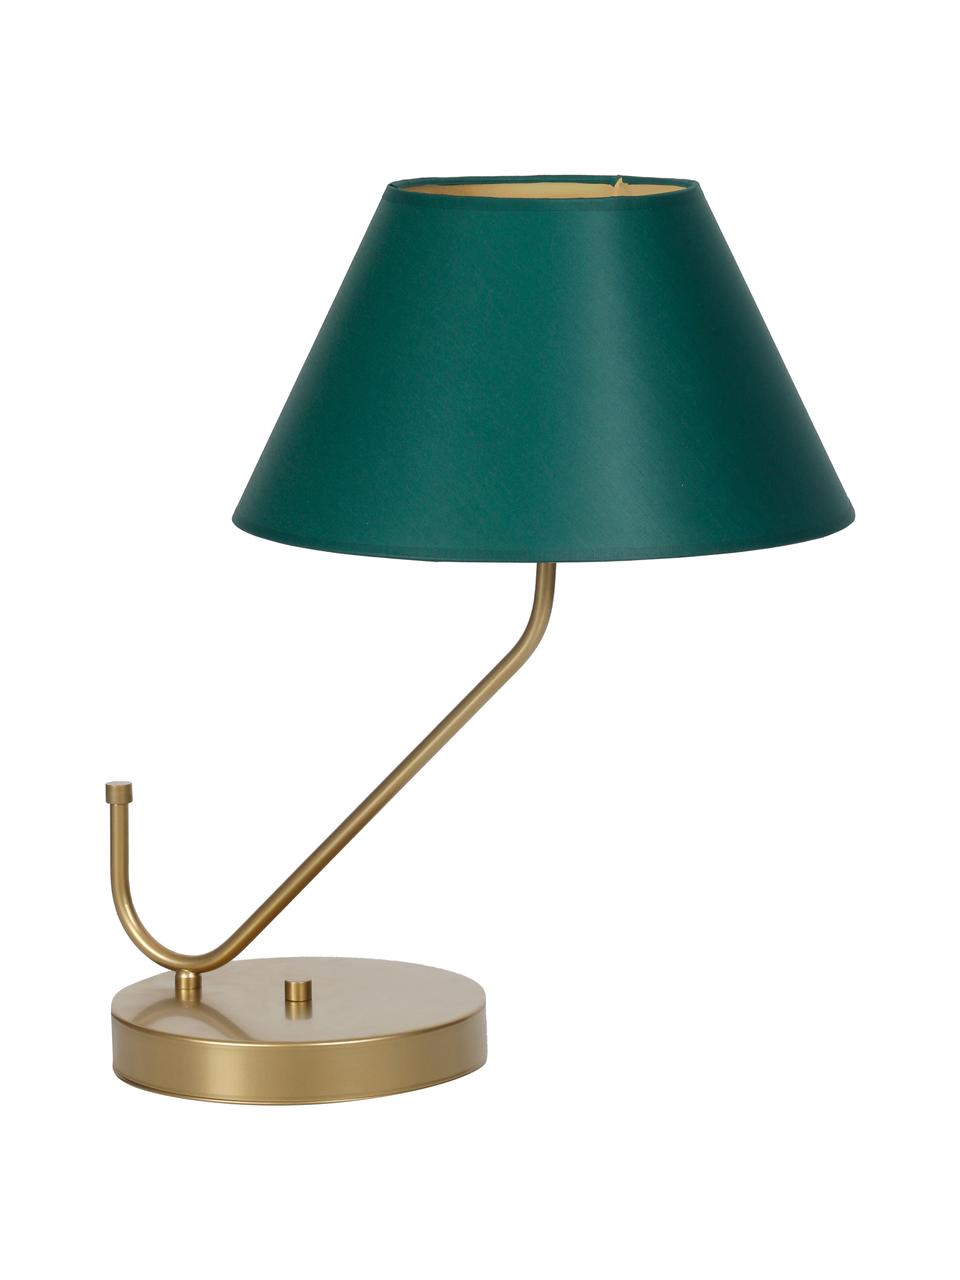 Große Tischlampe Victoria, Lampenschirm: Baumwollgemisch, Lampenfuß: Metall, beschichtet, Grün, Goldfarben, 45 x 50 cm